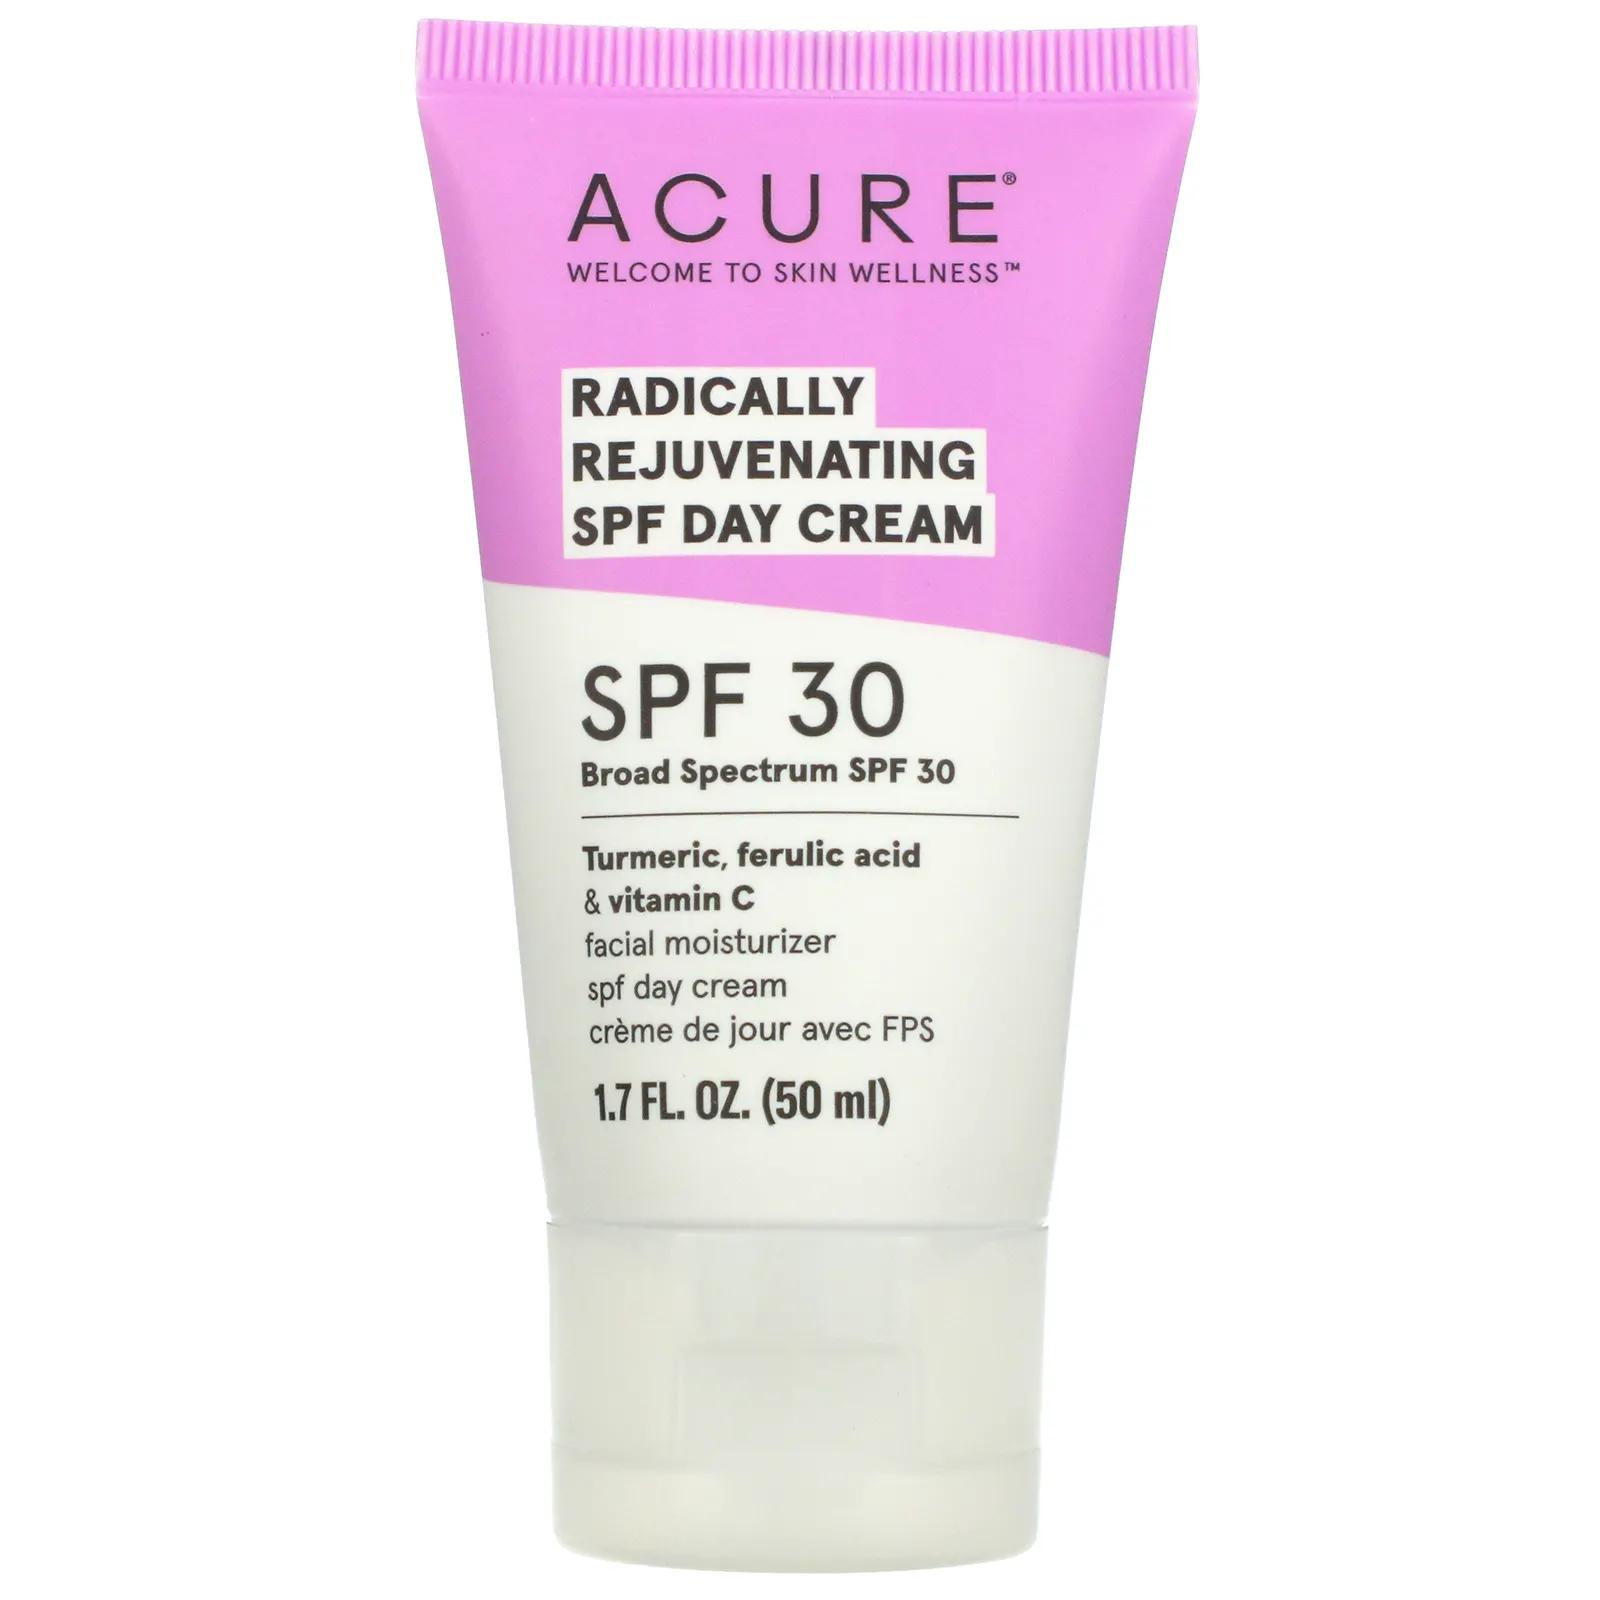 acure radically rejuvenating spf30 day cream 1 7oz 50ml p Acure Radically Rejuvenating Day Cream SPF 30 1.7 fl oz (50 ml)